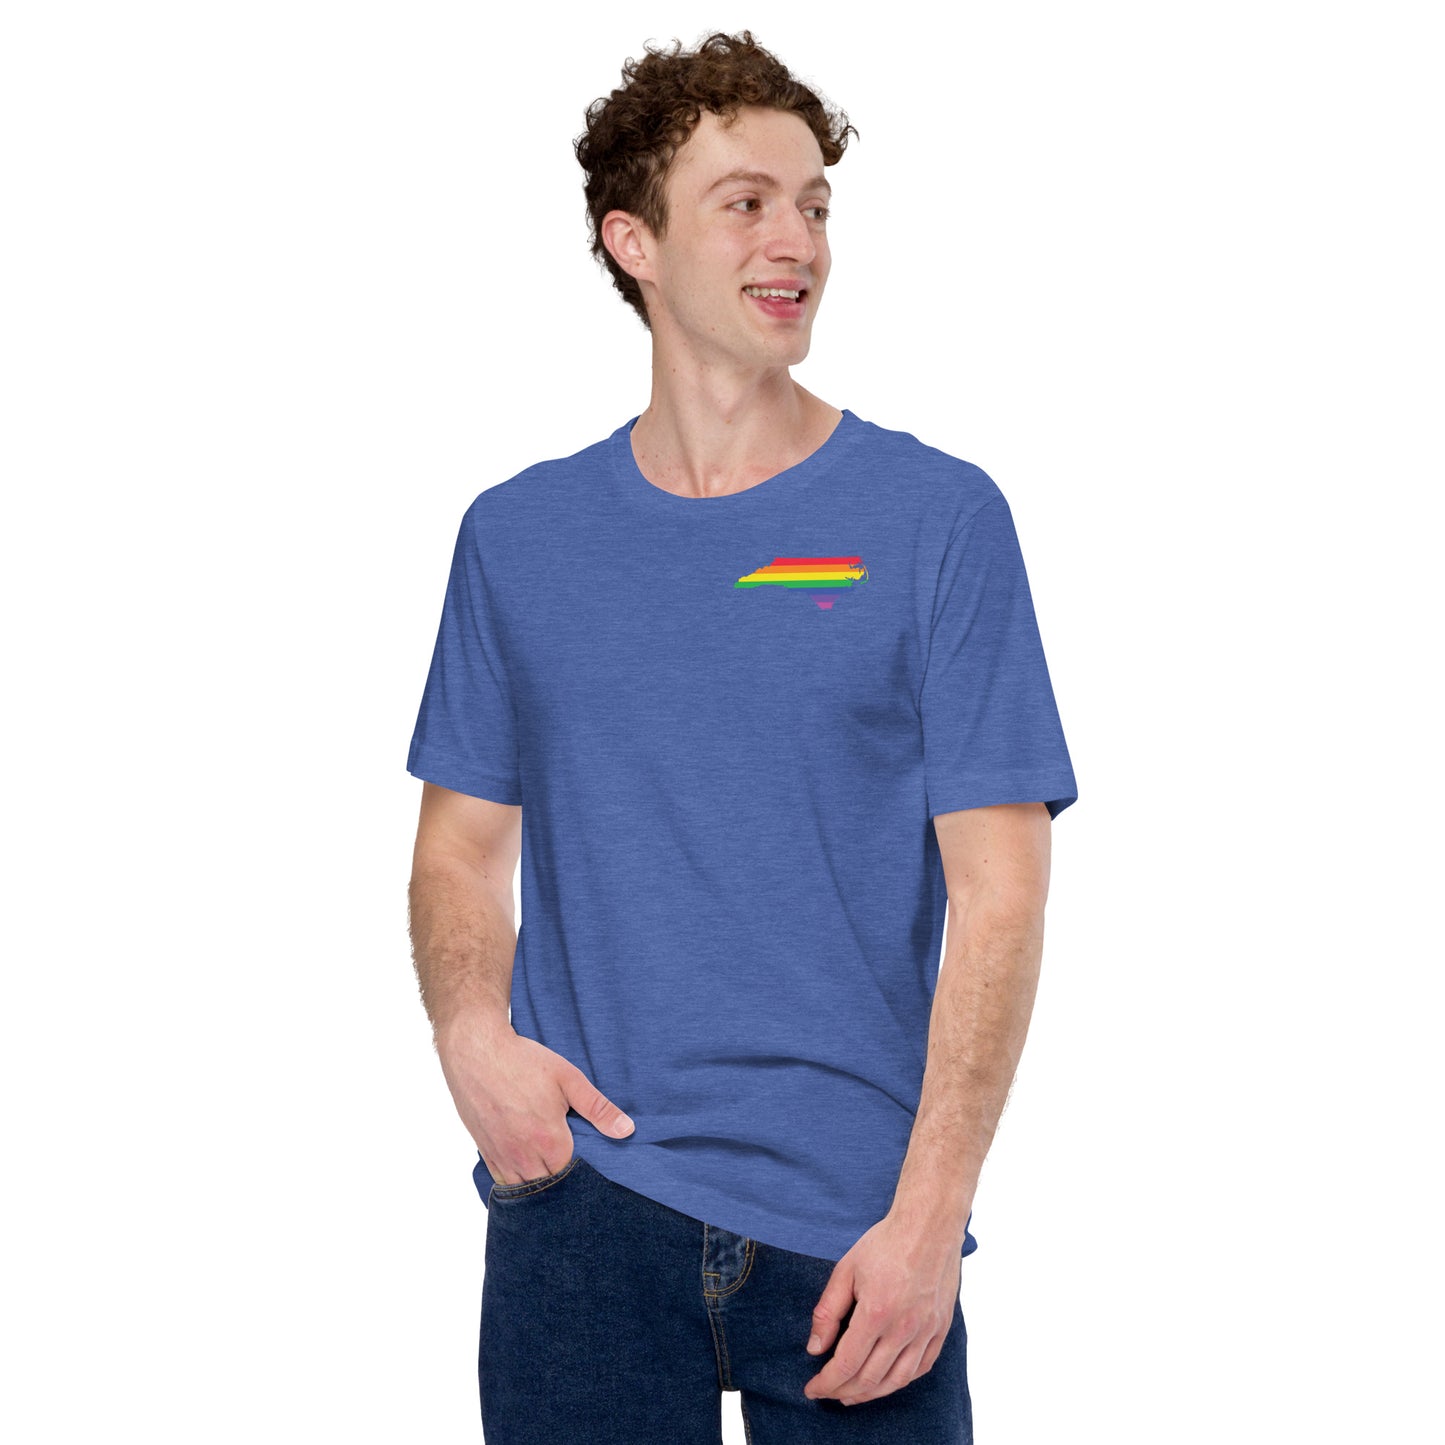 "North Carolina Proud" Unisex t-shirt